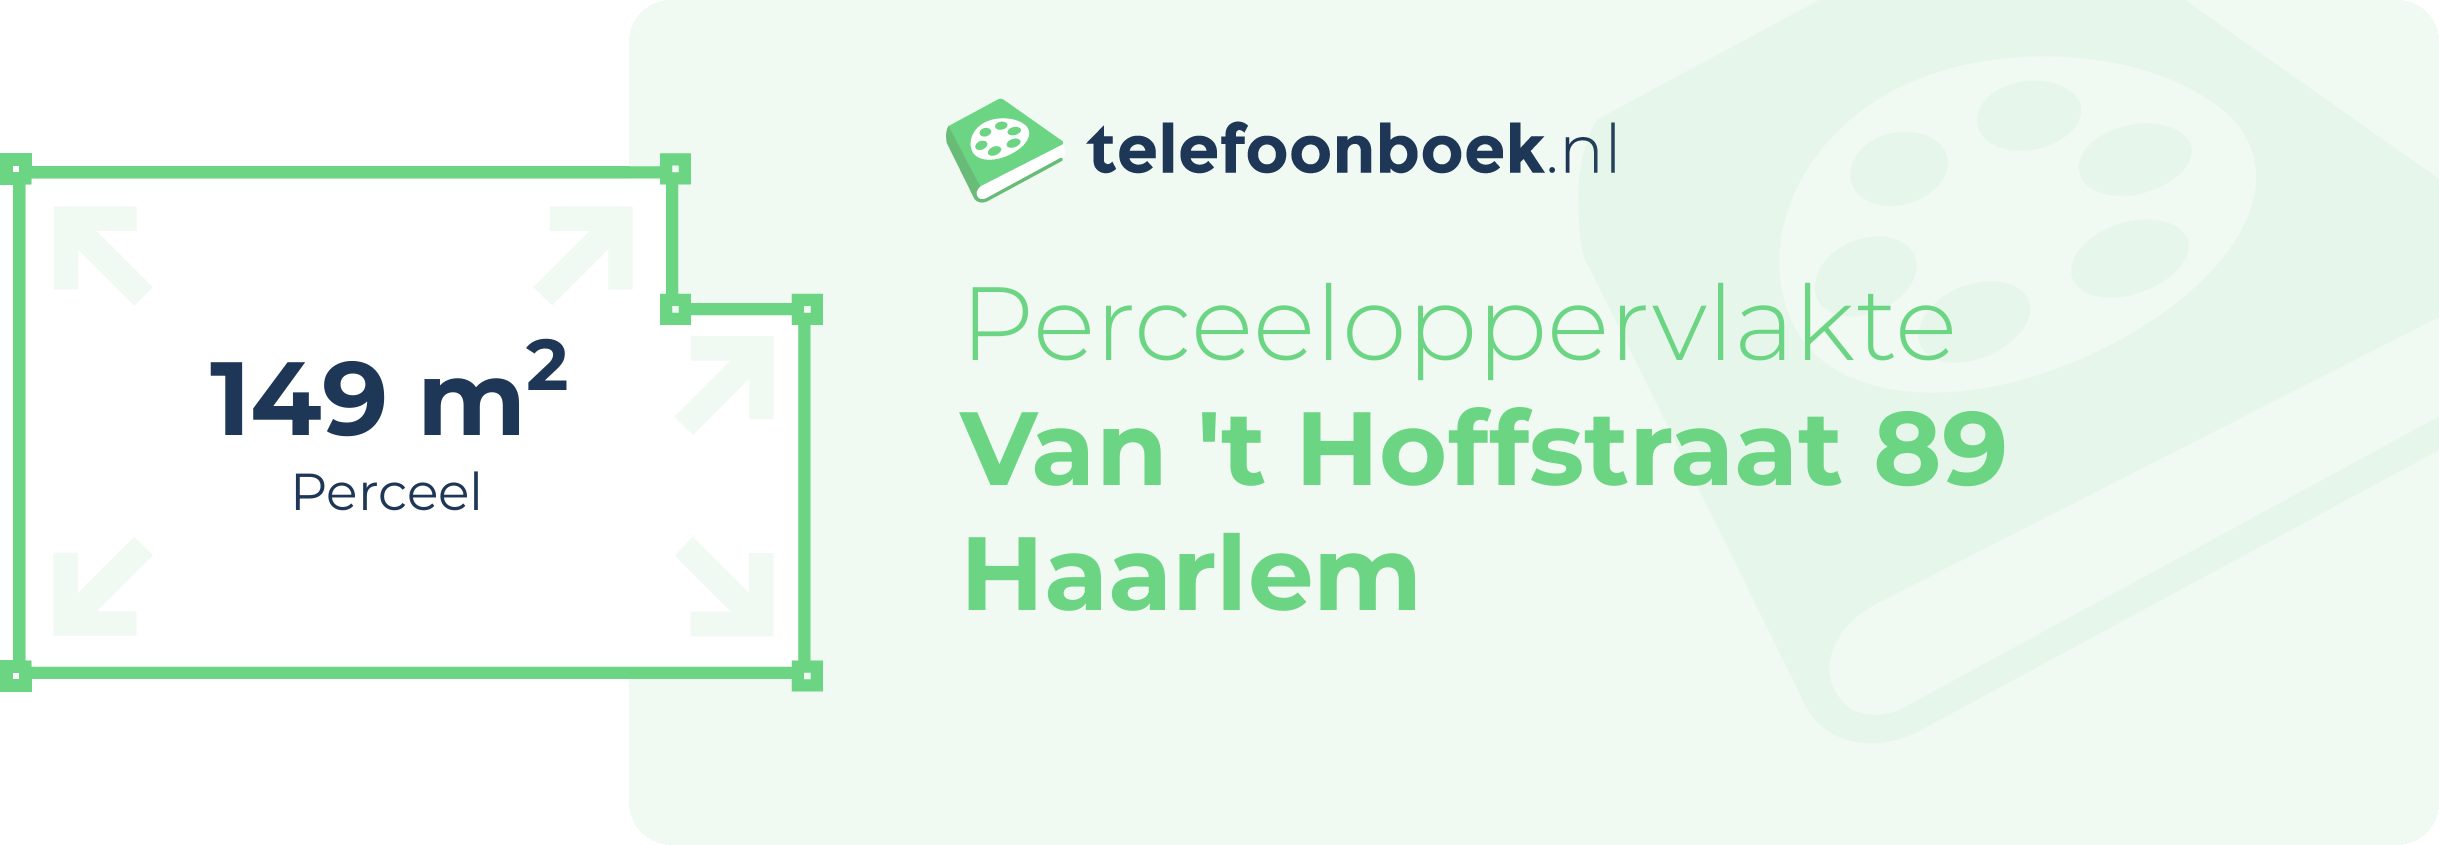 Perceeloppervlakte Van 't Hoffstraat 89 Haarlem